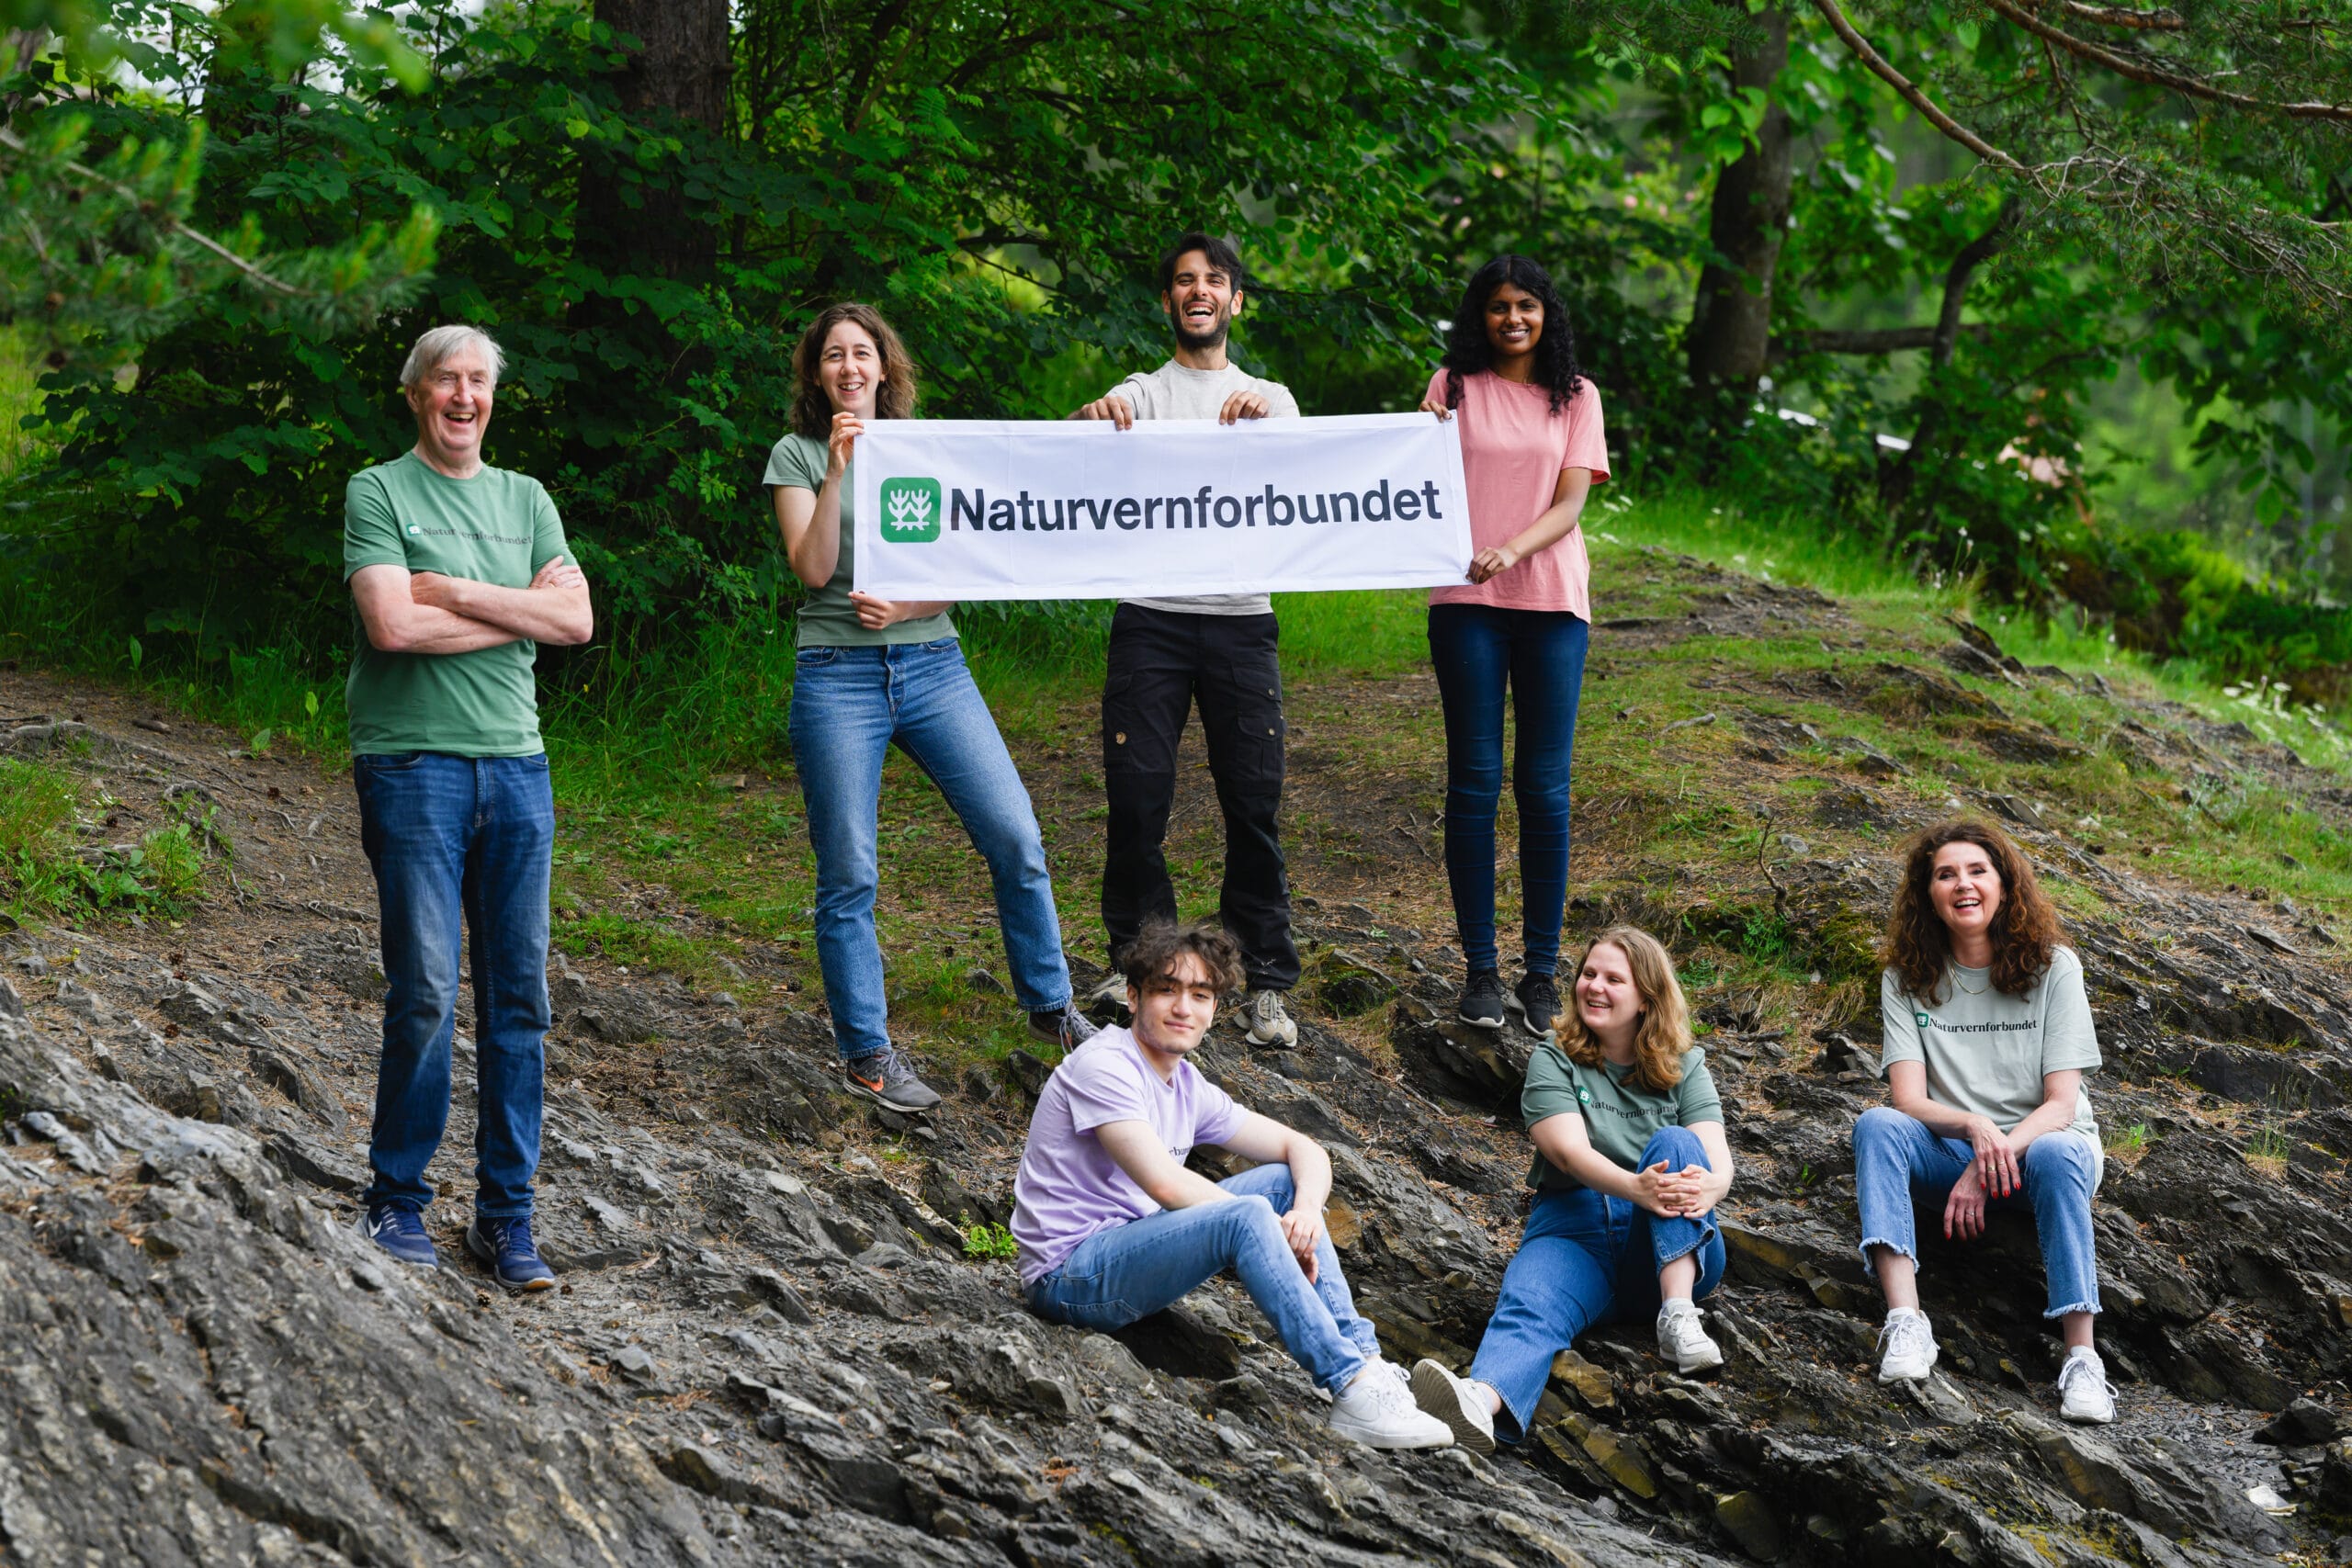 Gruppe mennesker holder opp et skilt av Naturvernforbundet